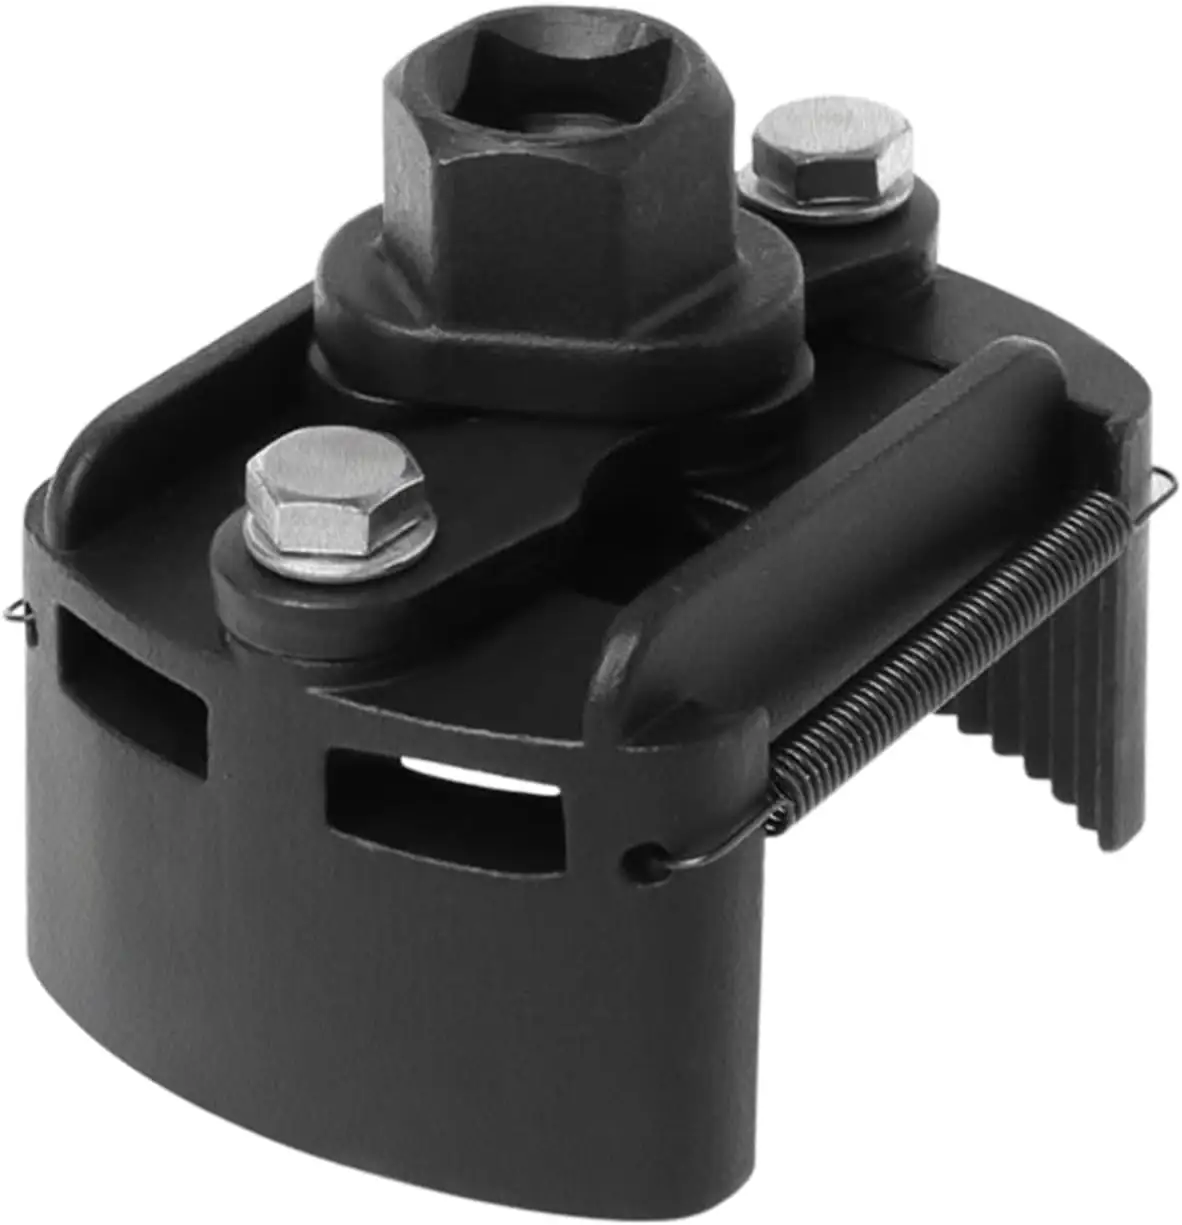 Ayarlanabilir yağ filtresi kap anahtar alet seti için 60-80mm kap 1/2 "konut aracı sökücü kiti